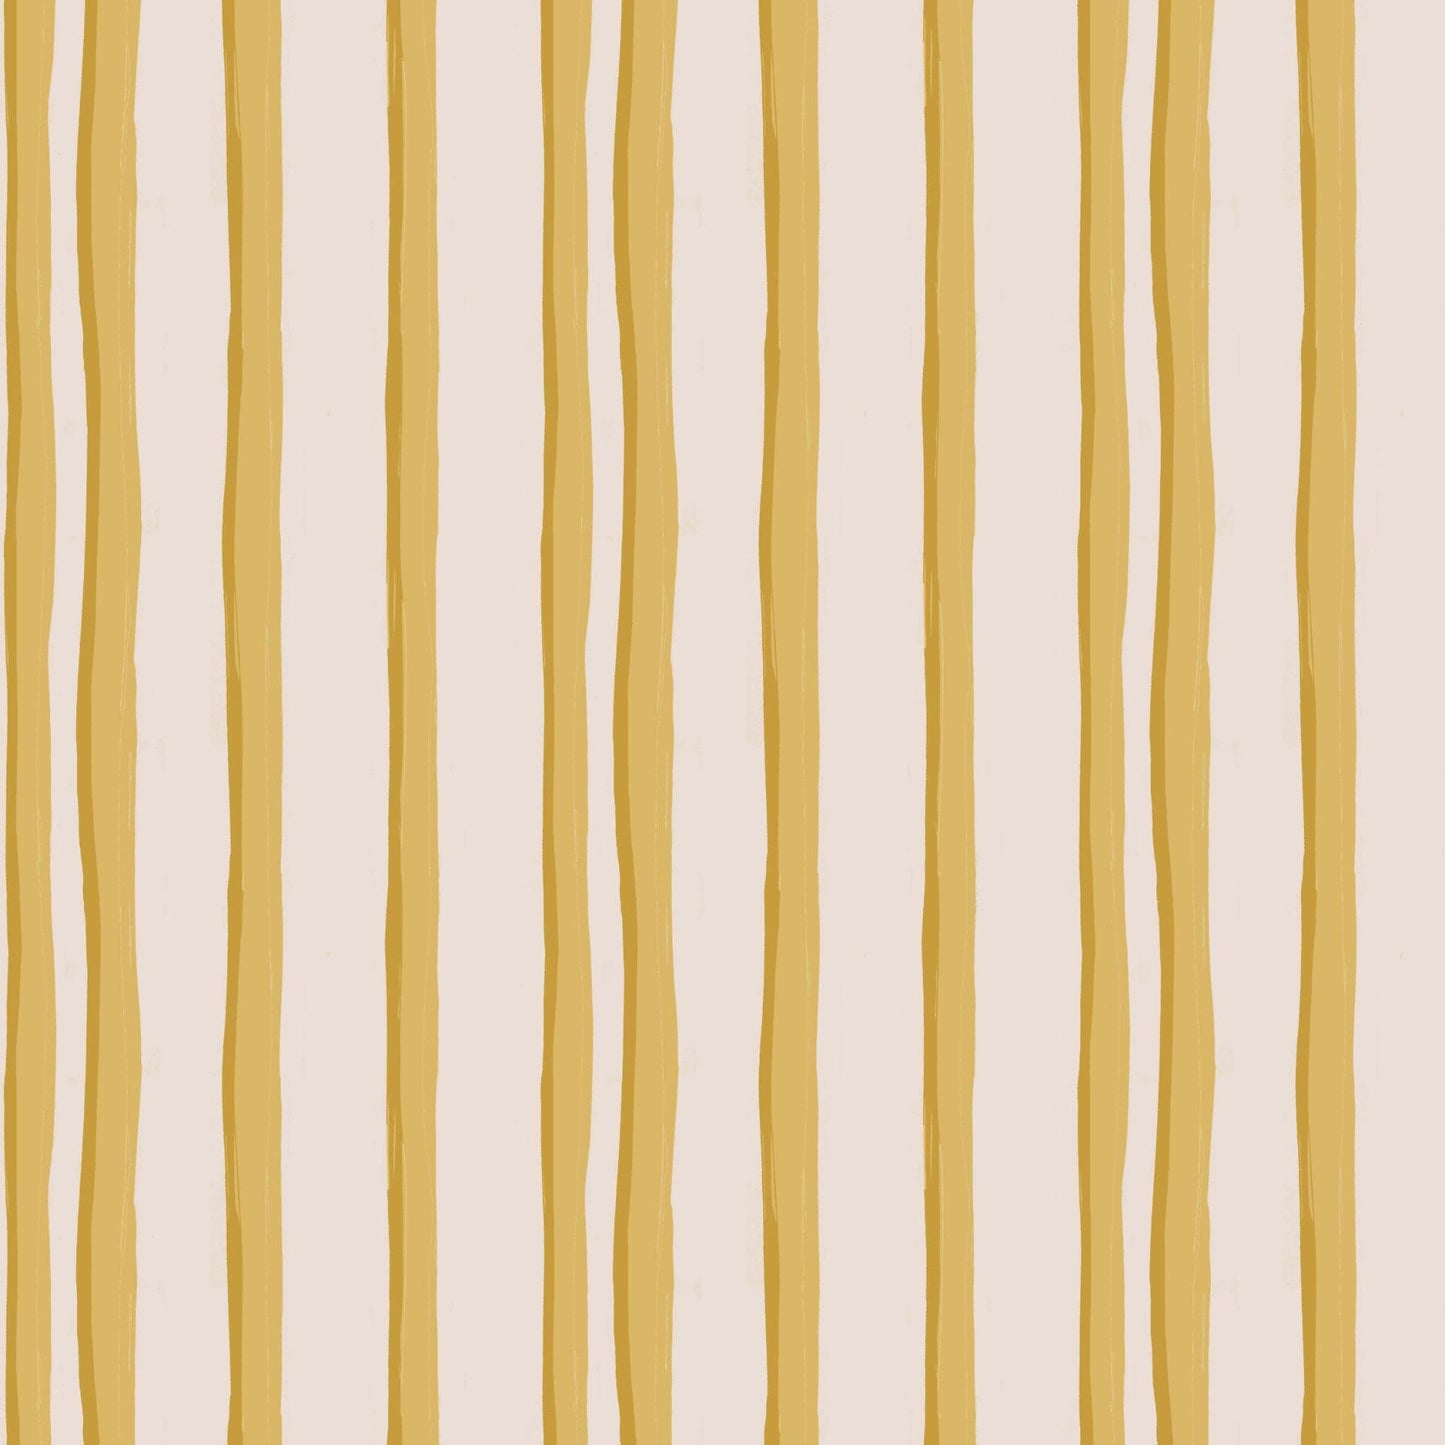 LINEN PER METRE Somerset Stripes Linen - Yellow